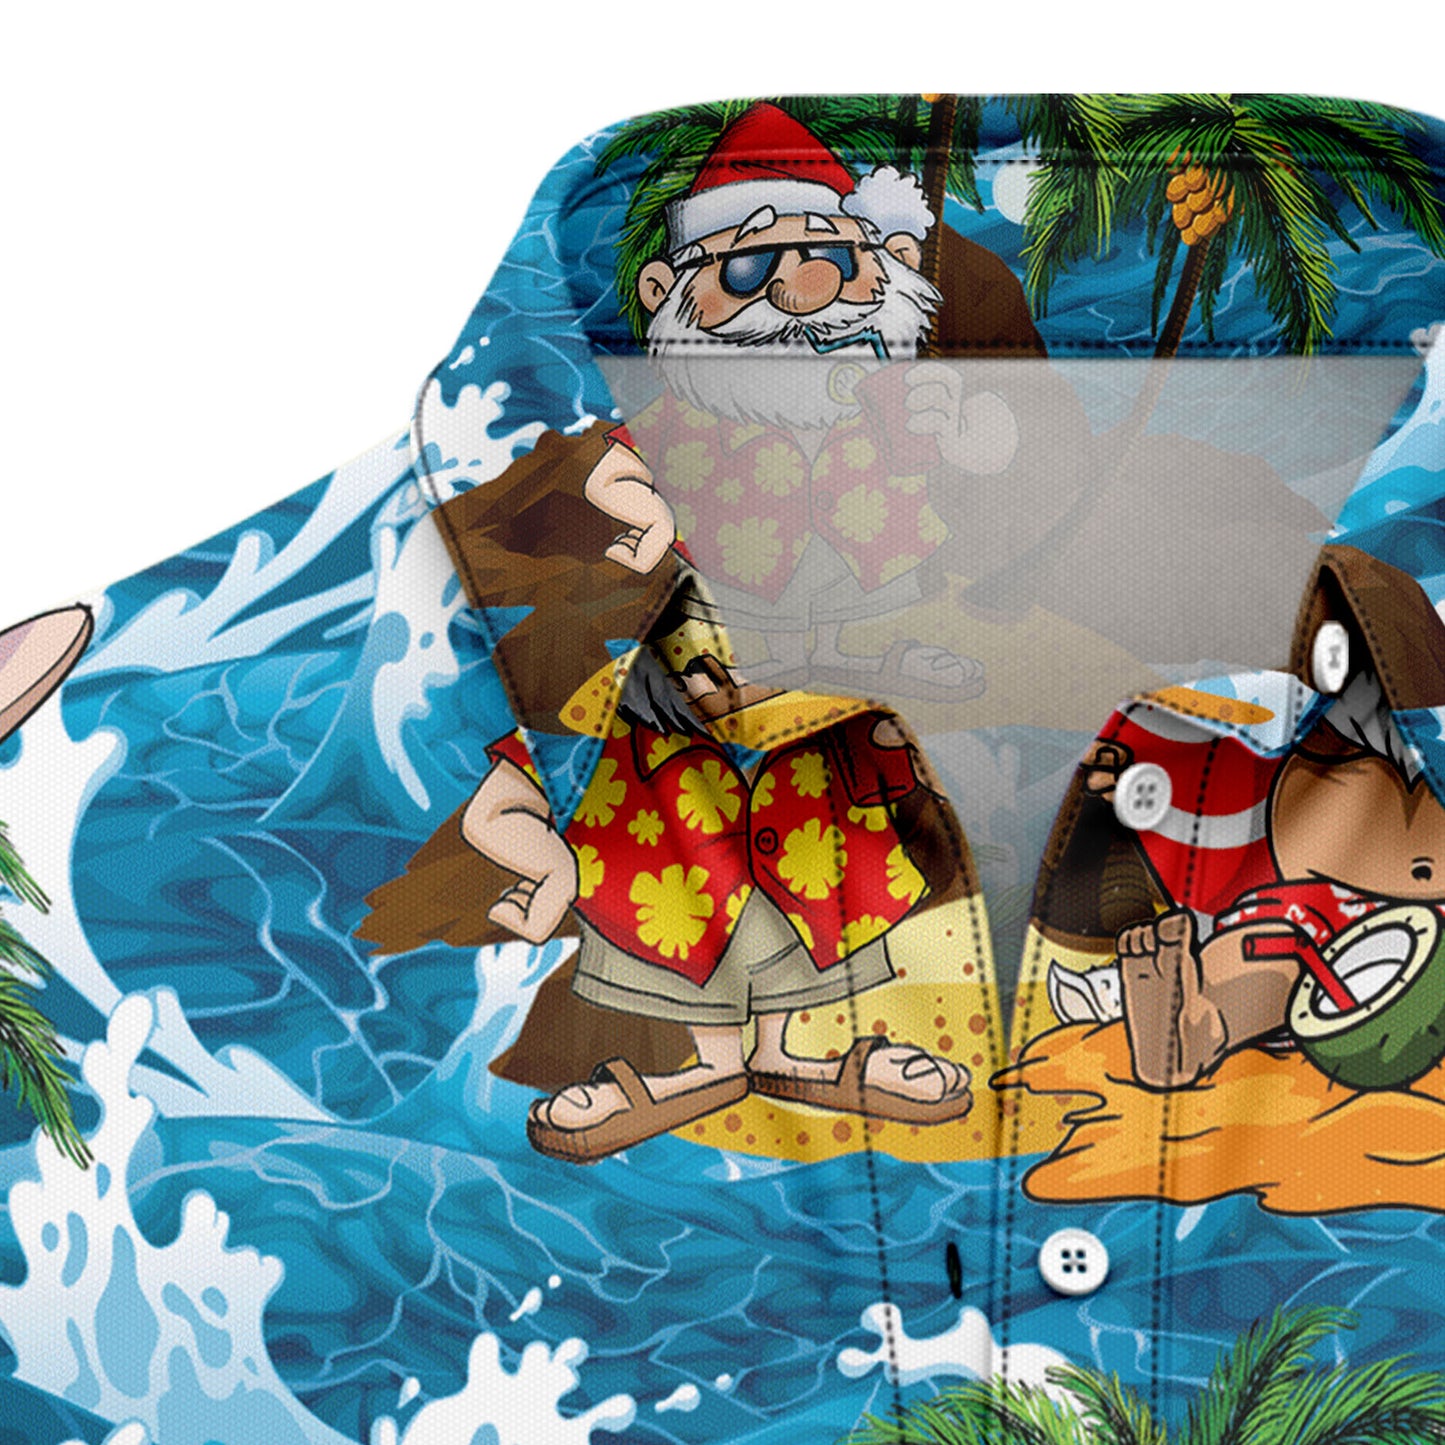 Santa Claus Crusoe G51211 Hawaiian Shirt